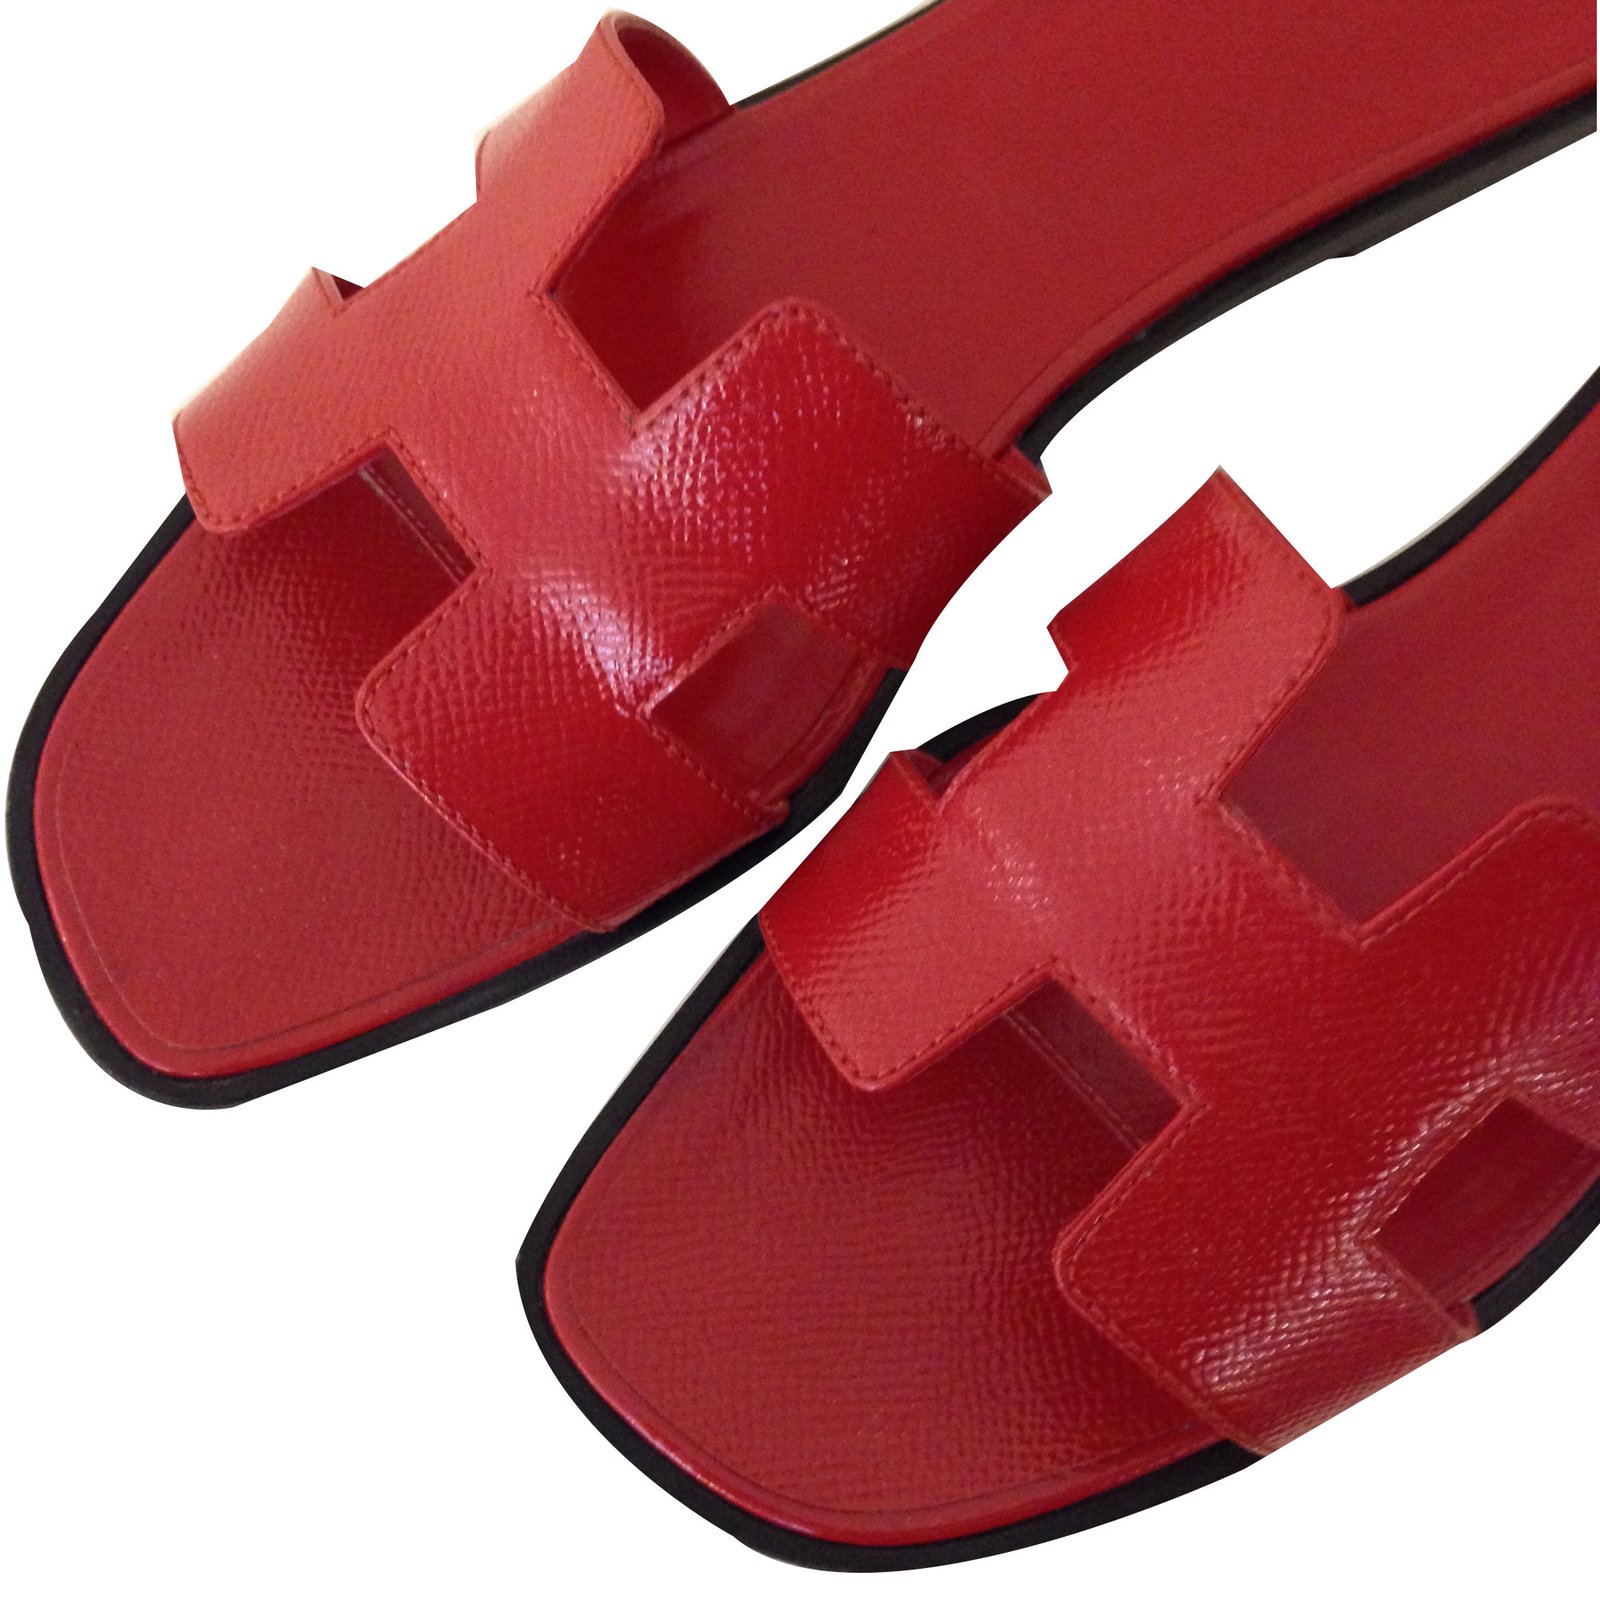 ORAN EPSOM Sandals Patent leather 